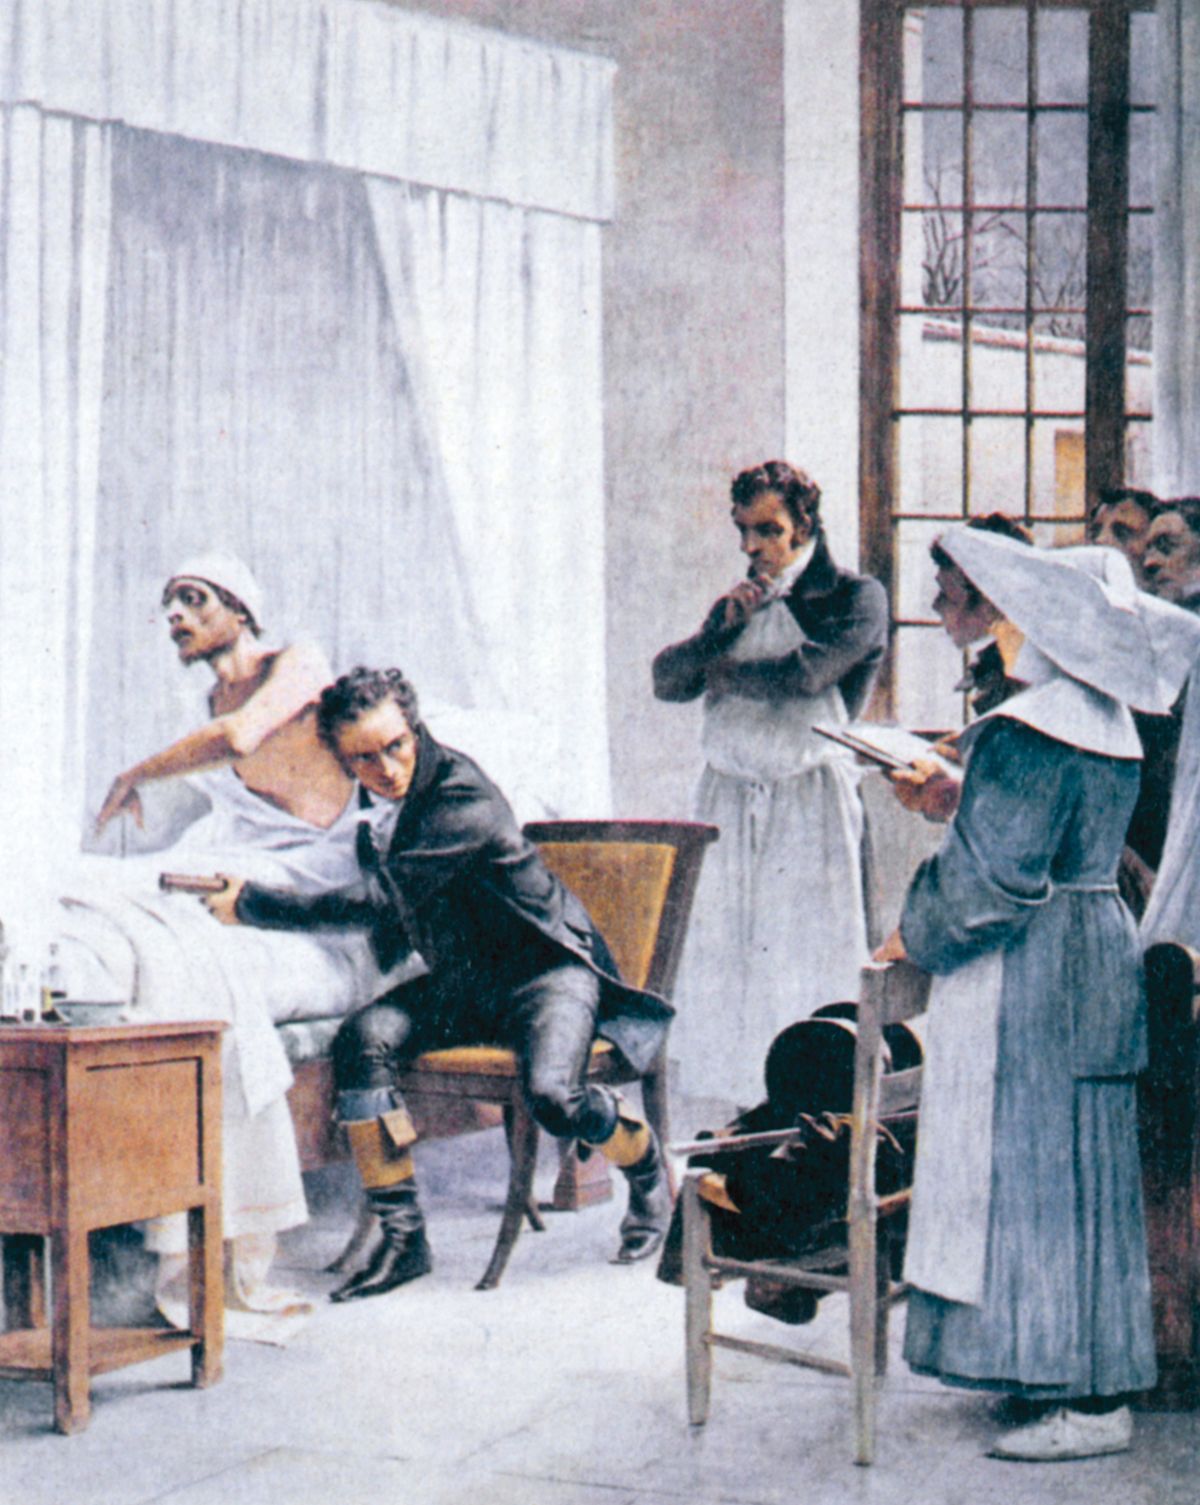 René Laënnec vyšetřuje chorého pomocí svého stetoskopu.